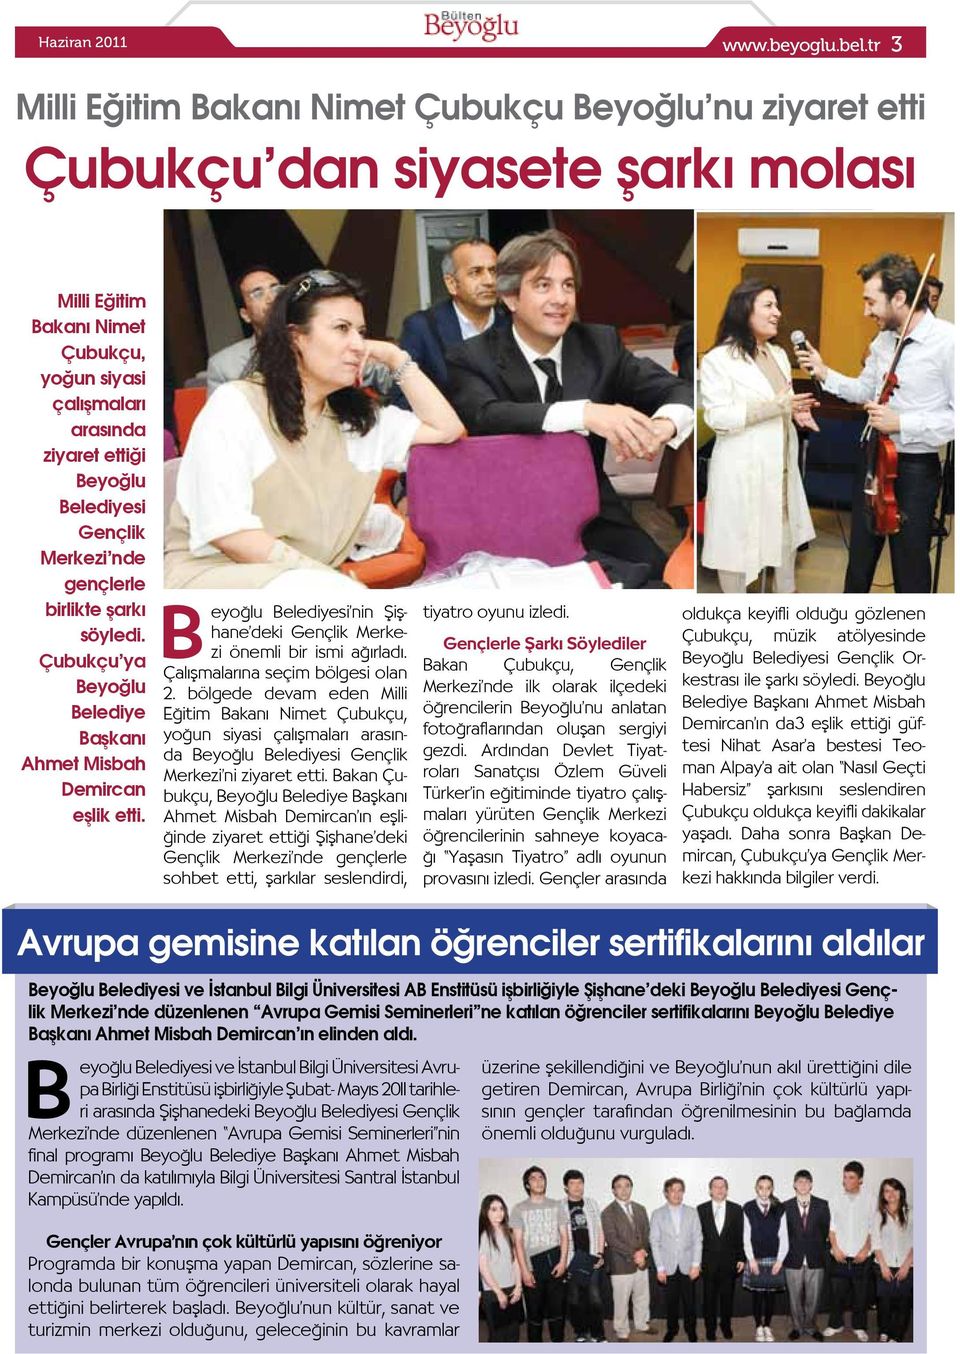 nde gençlerle birlikte şarkı söyledi. Çubukçu ya Belediye Başkanı Ahmet Misbah Demircan eşlik etti. Belediyesi nin Şişhane deki Gençlik Merkezi önemli bir ismi ağırladı.